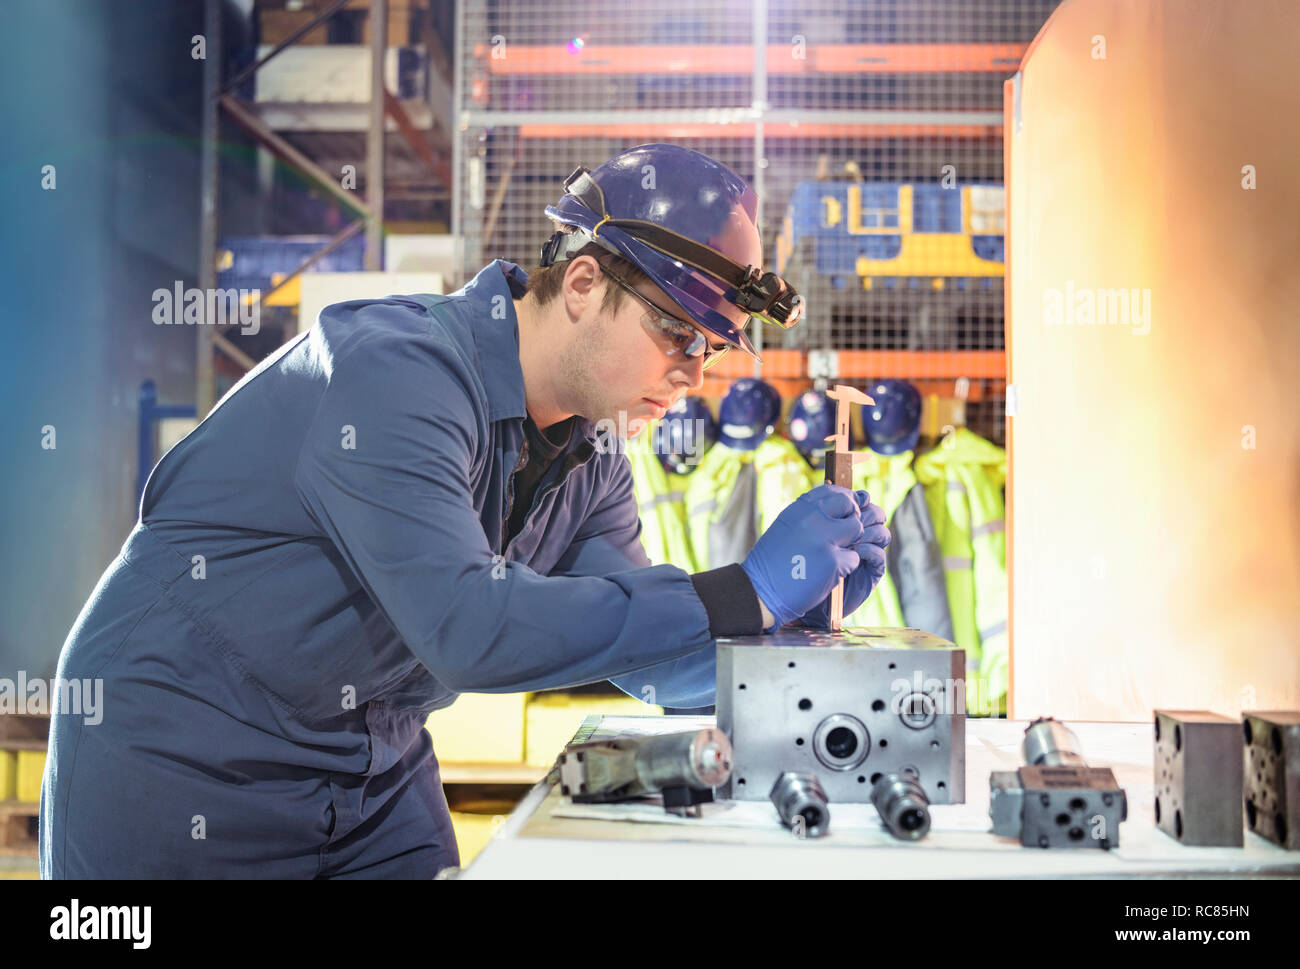 Inspección de válvulas de ingeniero durante la parada en la estación de energía nuclear Foto de stock